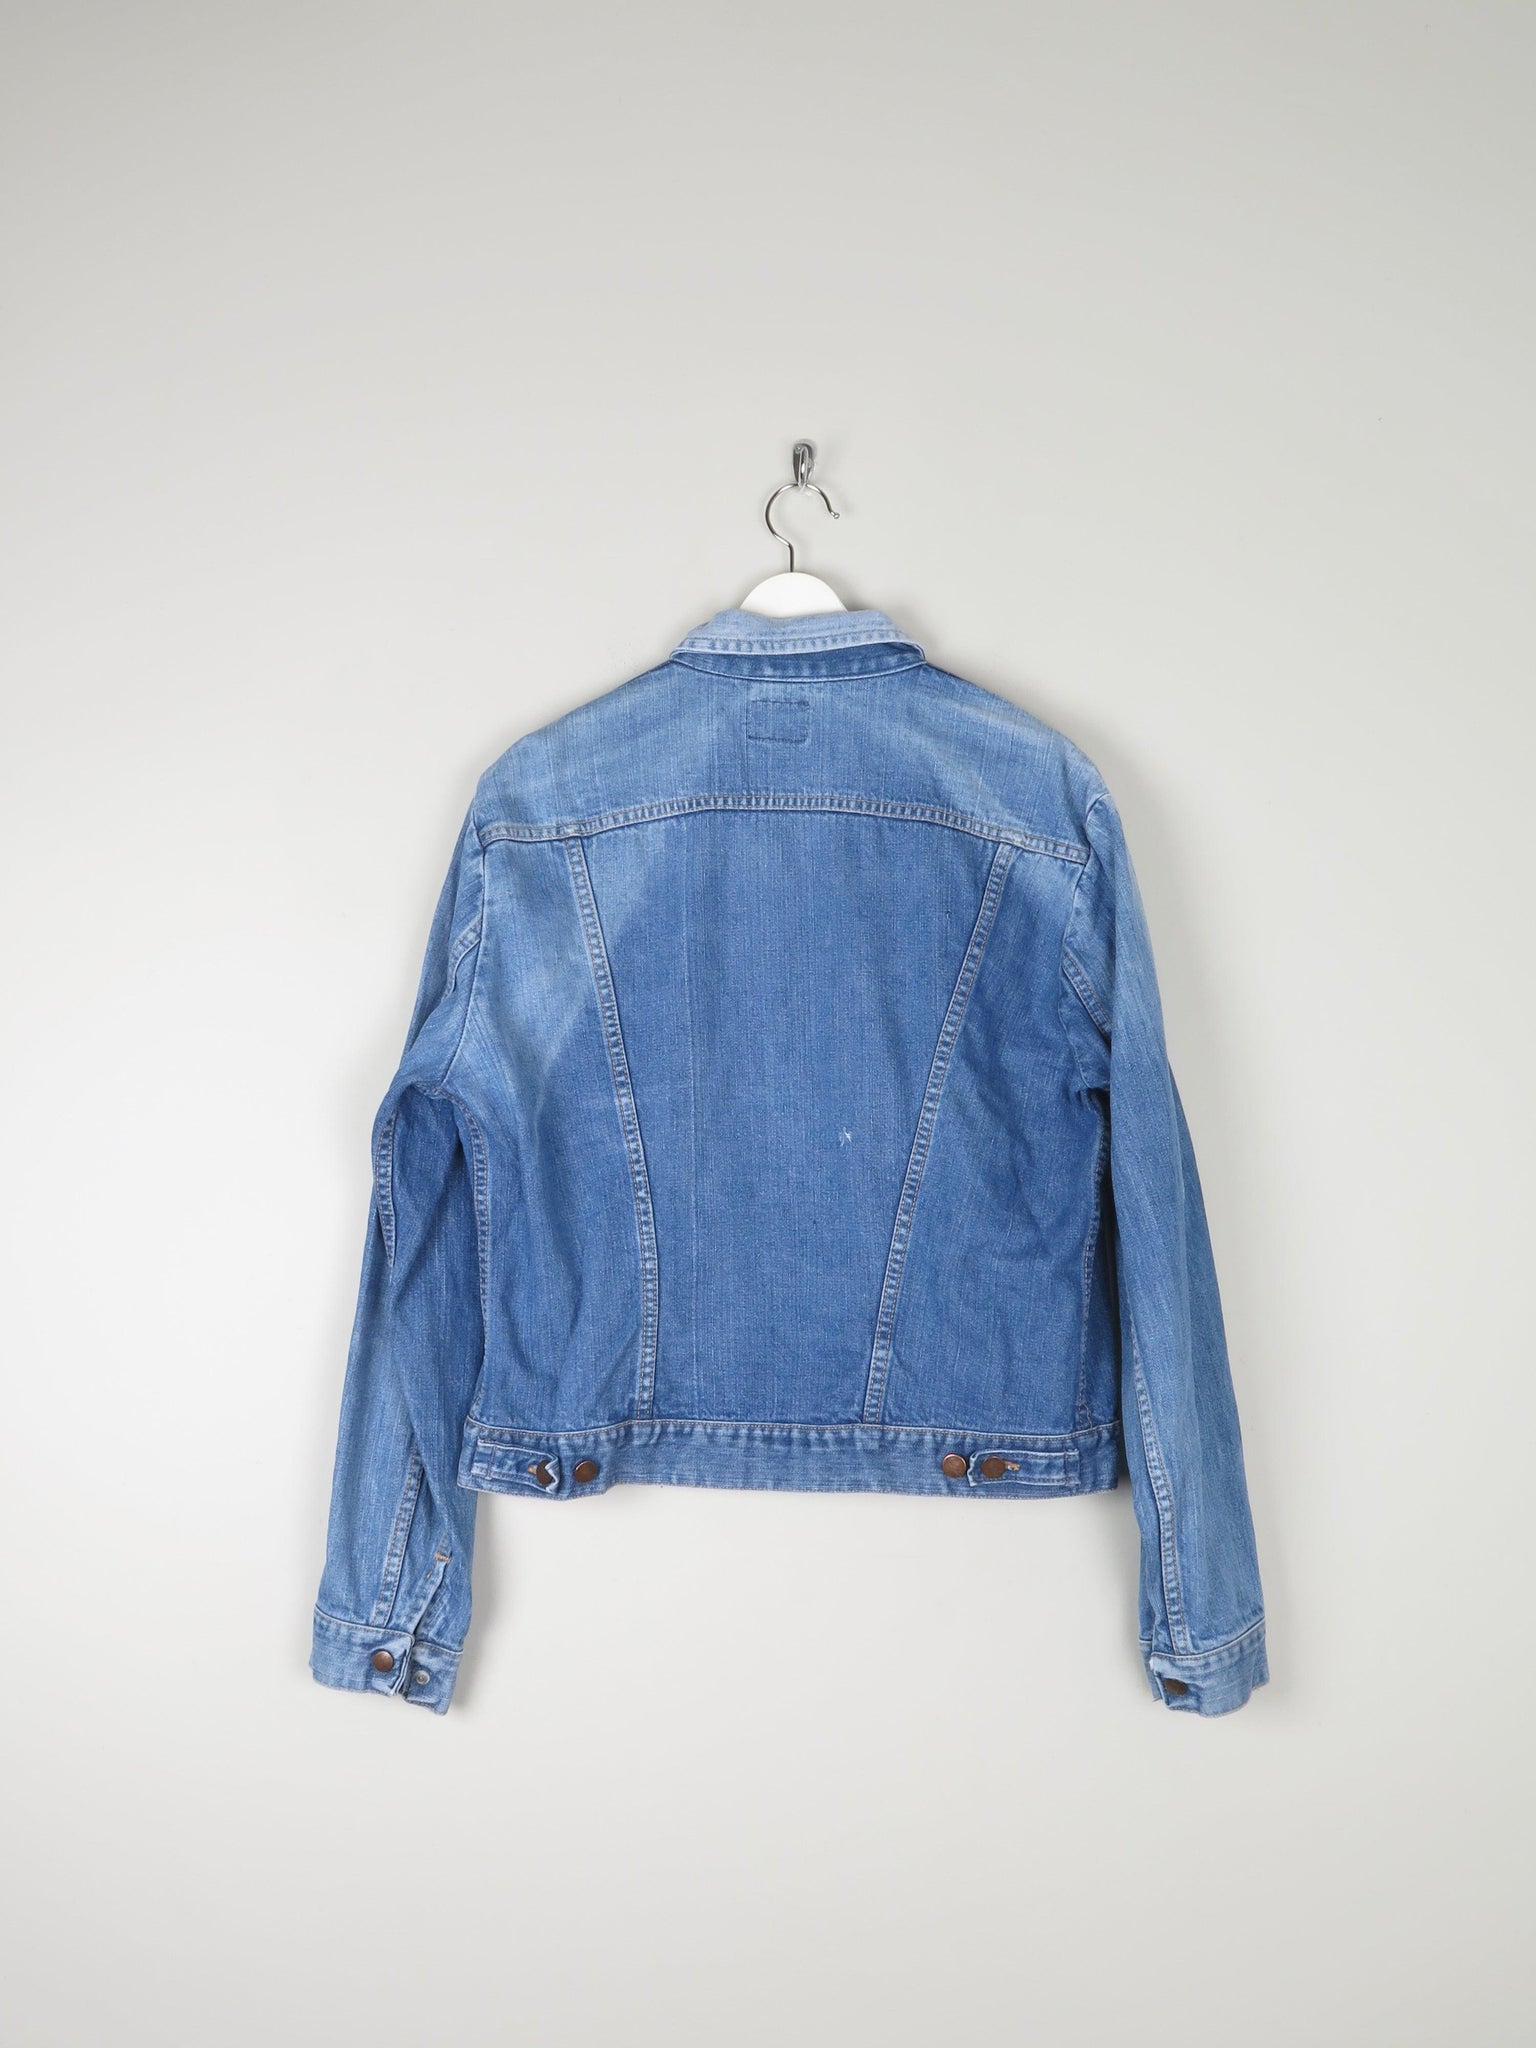 Blue Denim Vintage Fitted  Wrangler Jacket L 46" - The Harlequin